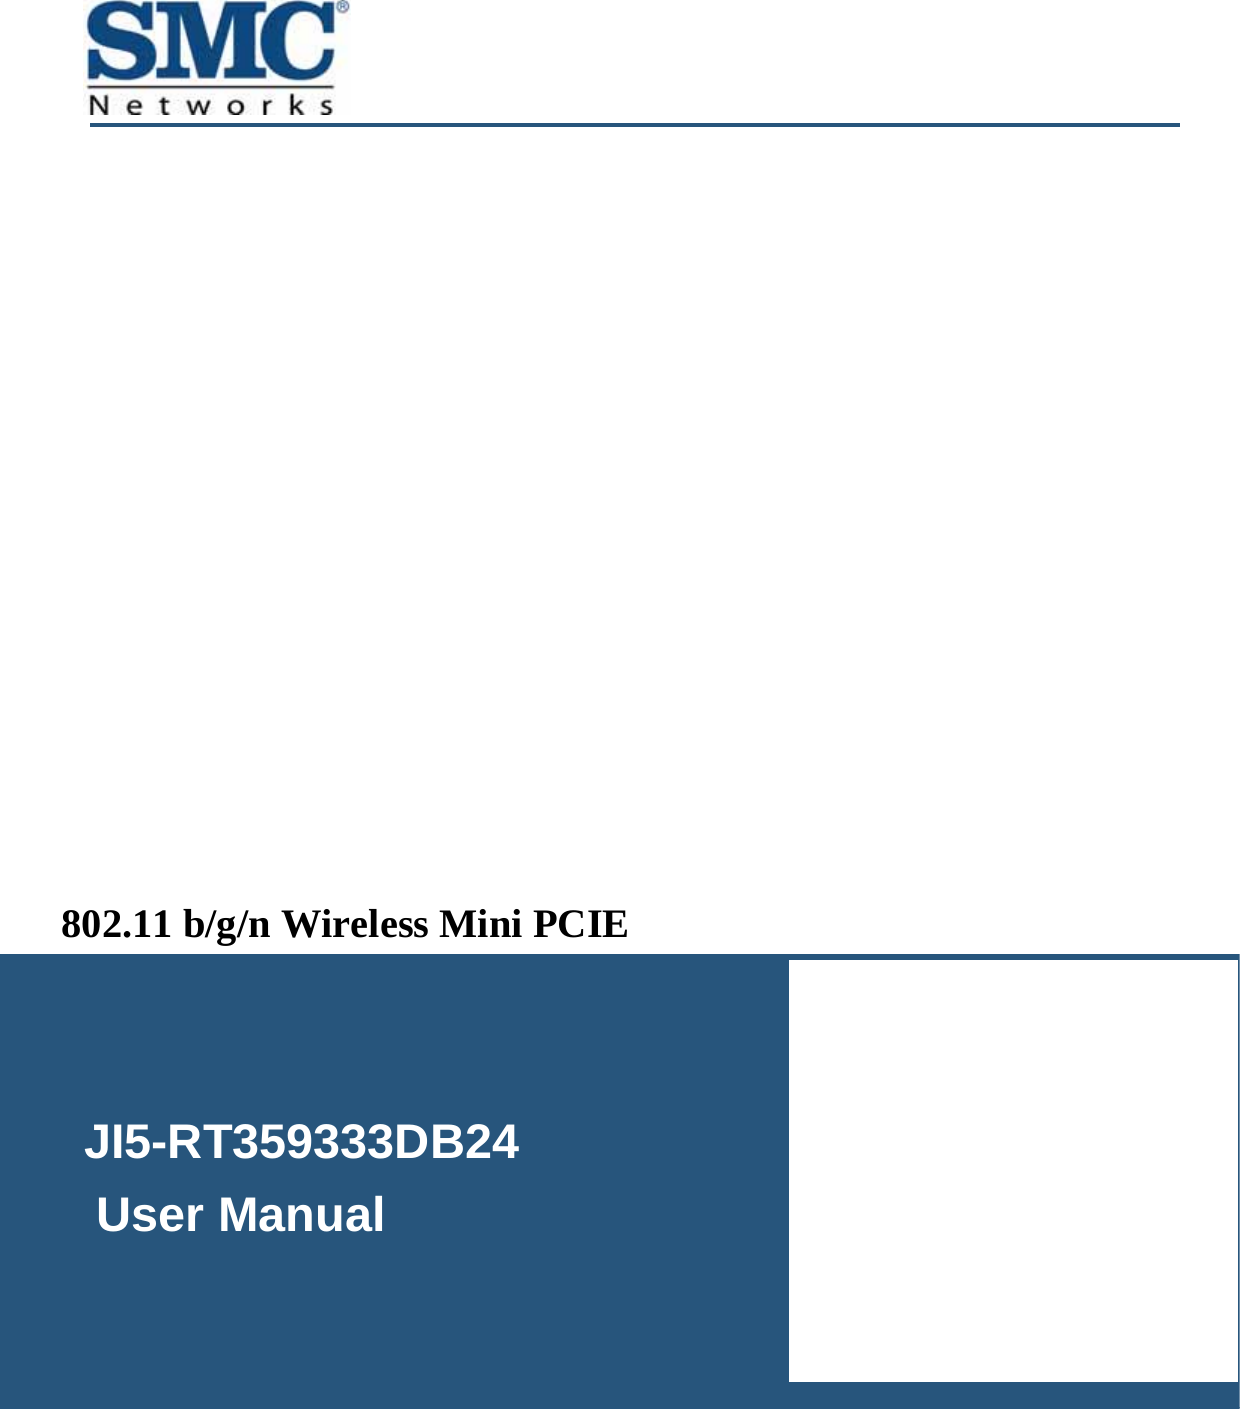   JI5-RT359333DB24     User Manual  802.11 b/g/n Wireless Mini PCIE  